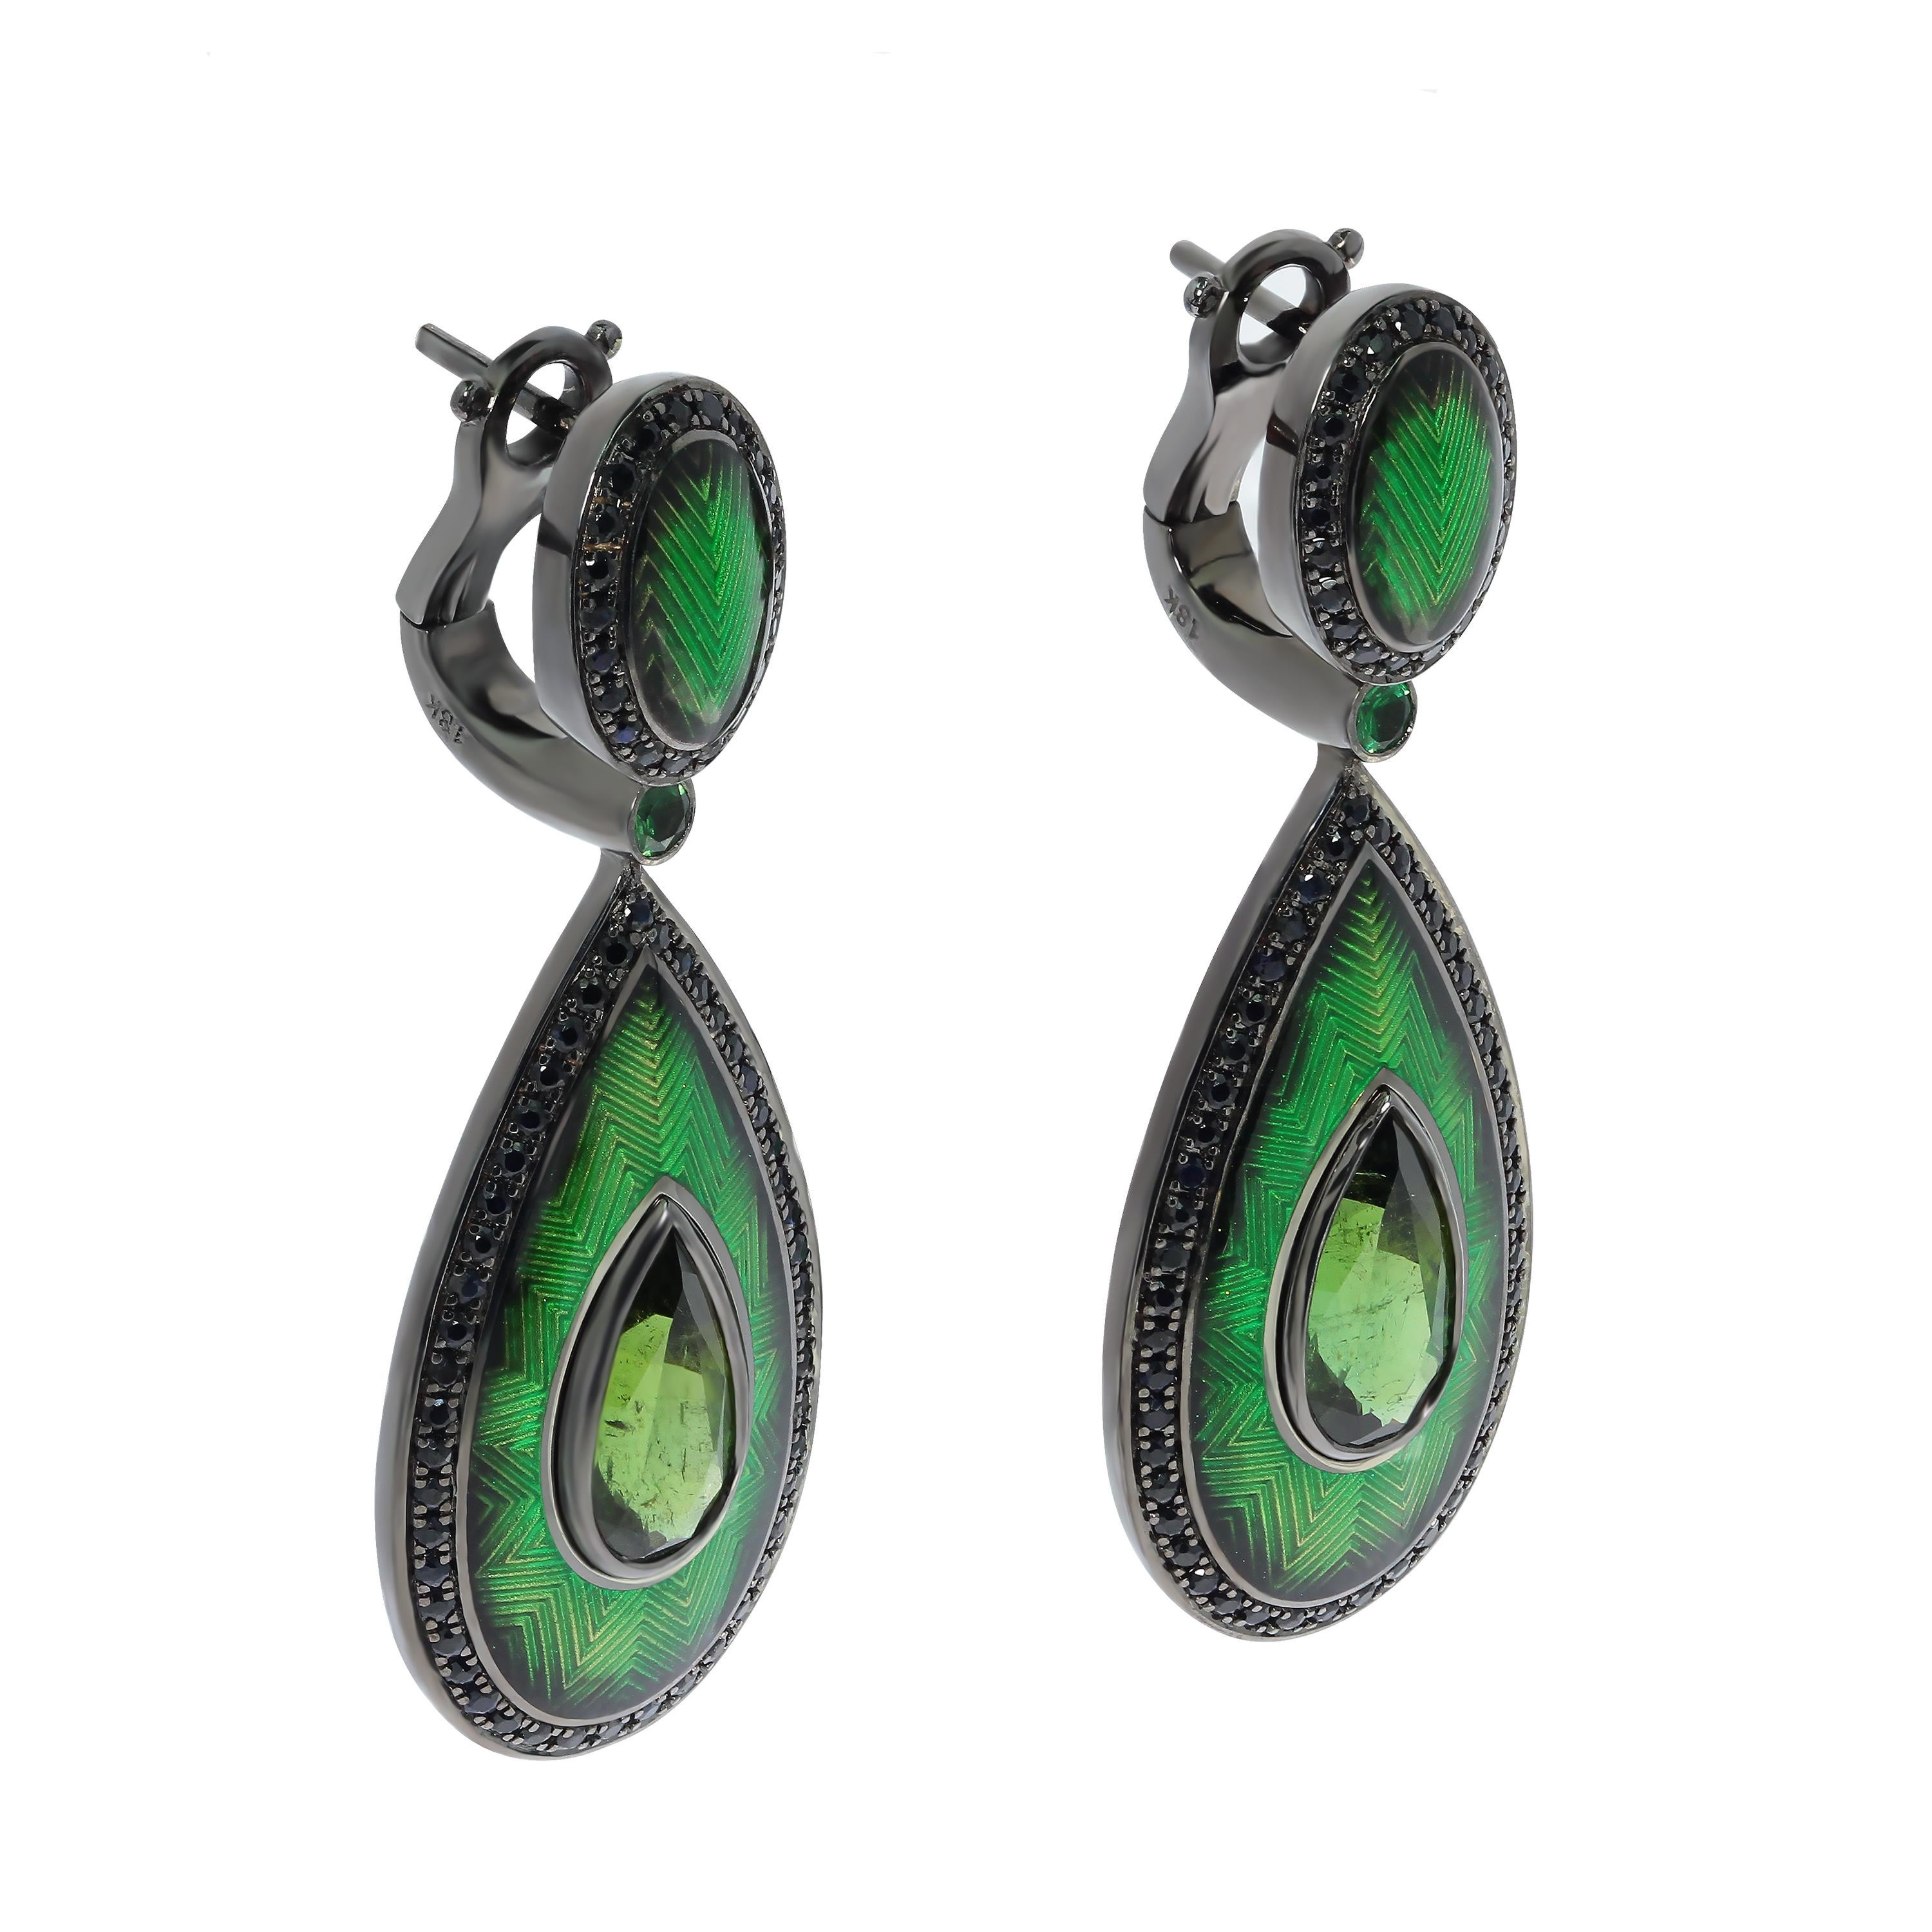 Grüner Turmalin 3,64 Karat Schwarzer Saphir 18 Karat Schwarzgold Emaille-Ohrringe
Wir präsentieren Ihnen Ohrringe aus unserer Signaturkollektion 